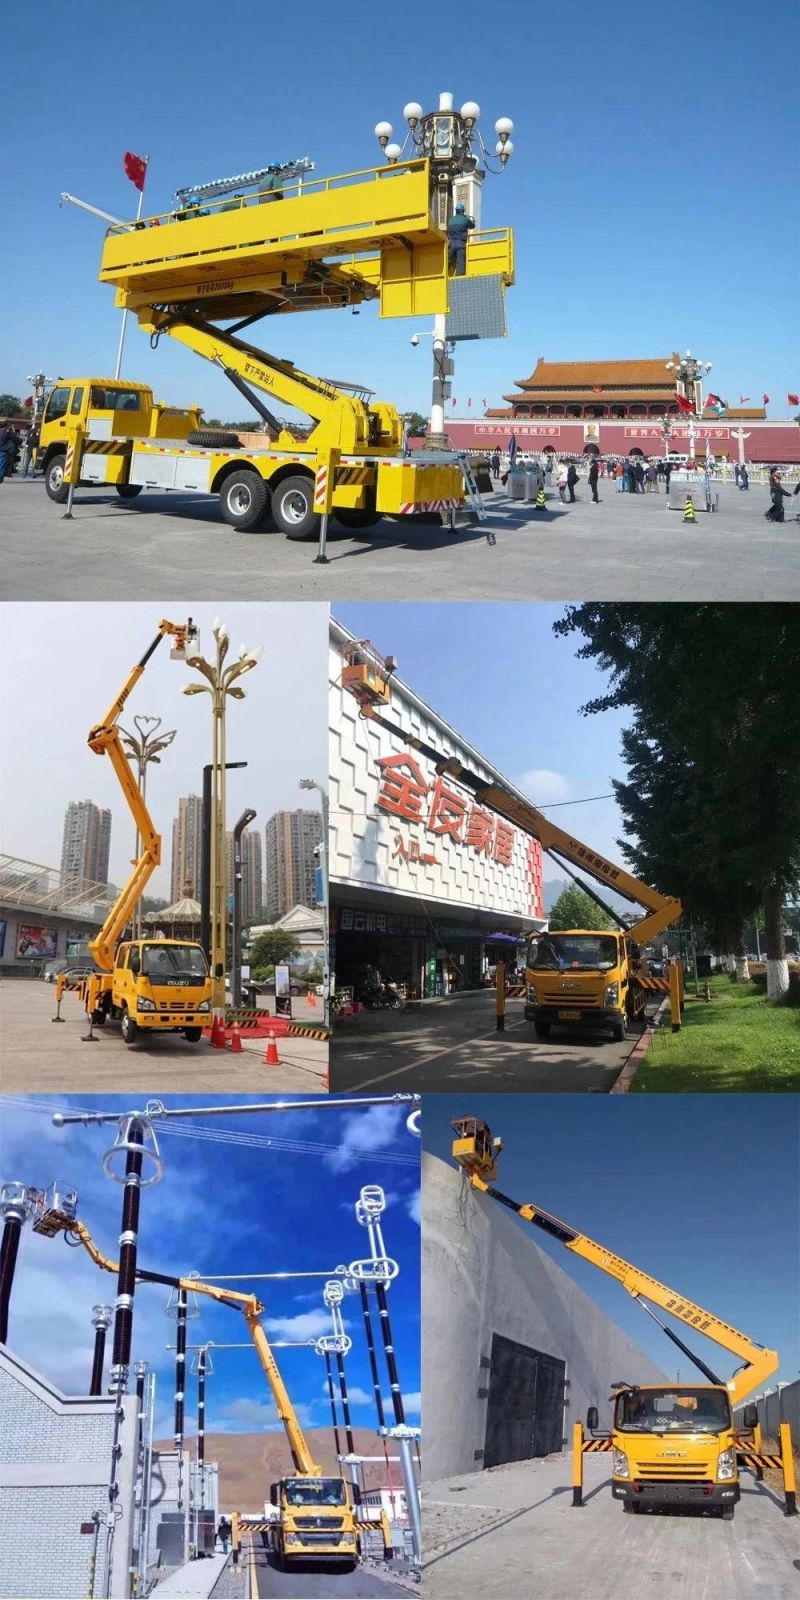 I-Suzu 190HP 24m 26m 28m Telescopic Boom Lift Truck 30m Hydraulic Man Lift Truck in Stock